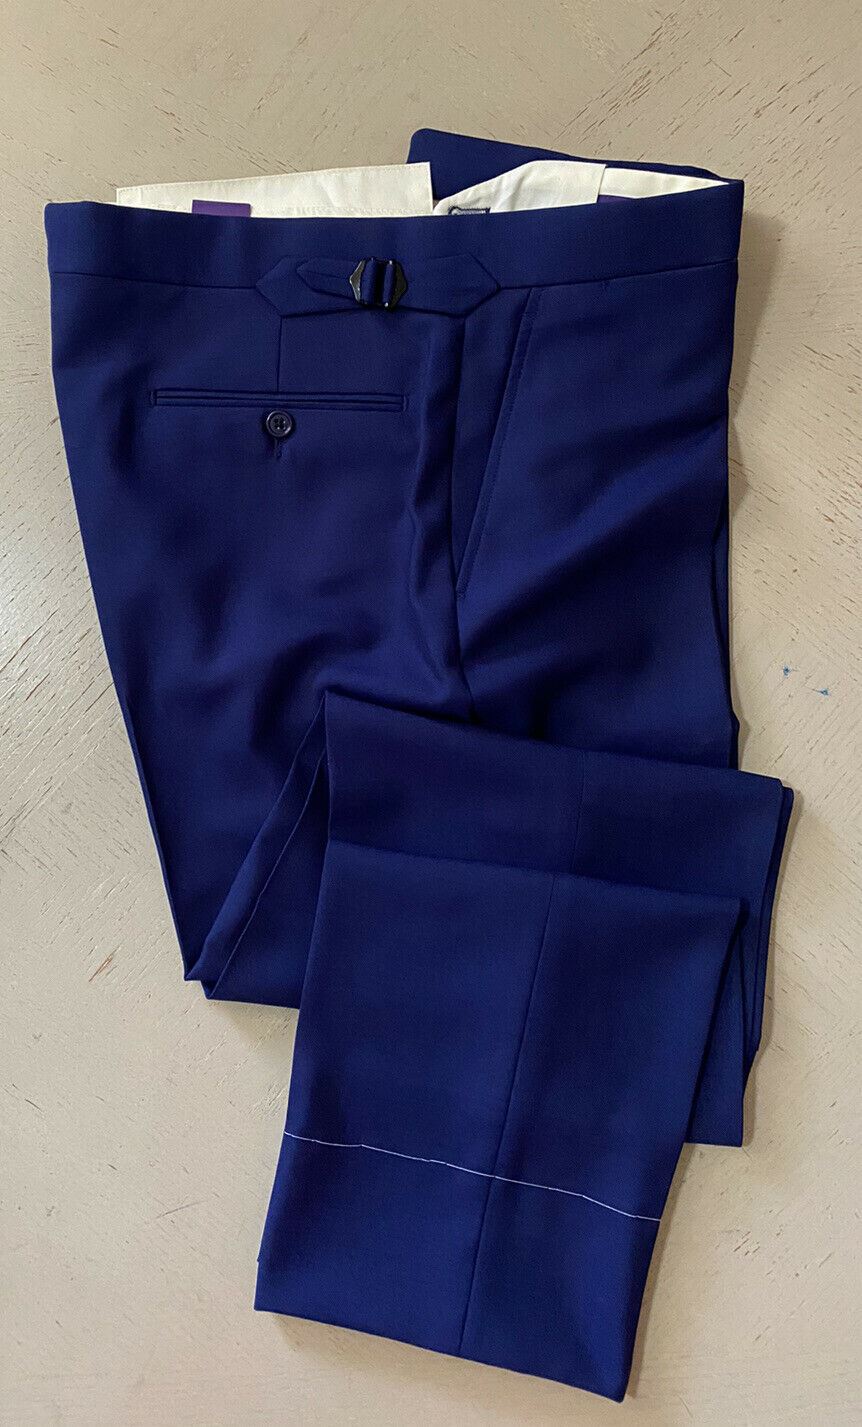 Новый мужской костюм Ralph Lauren Purple Label, синий, 44 л, США/54 л, Италия, 3295 долл. США